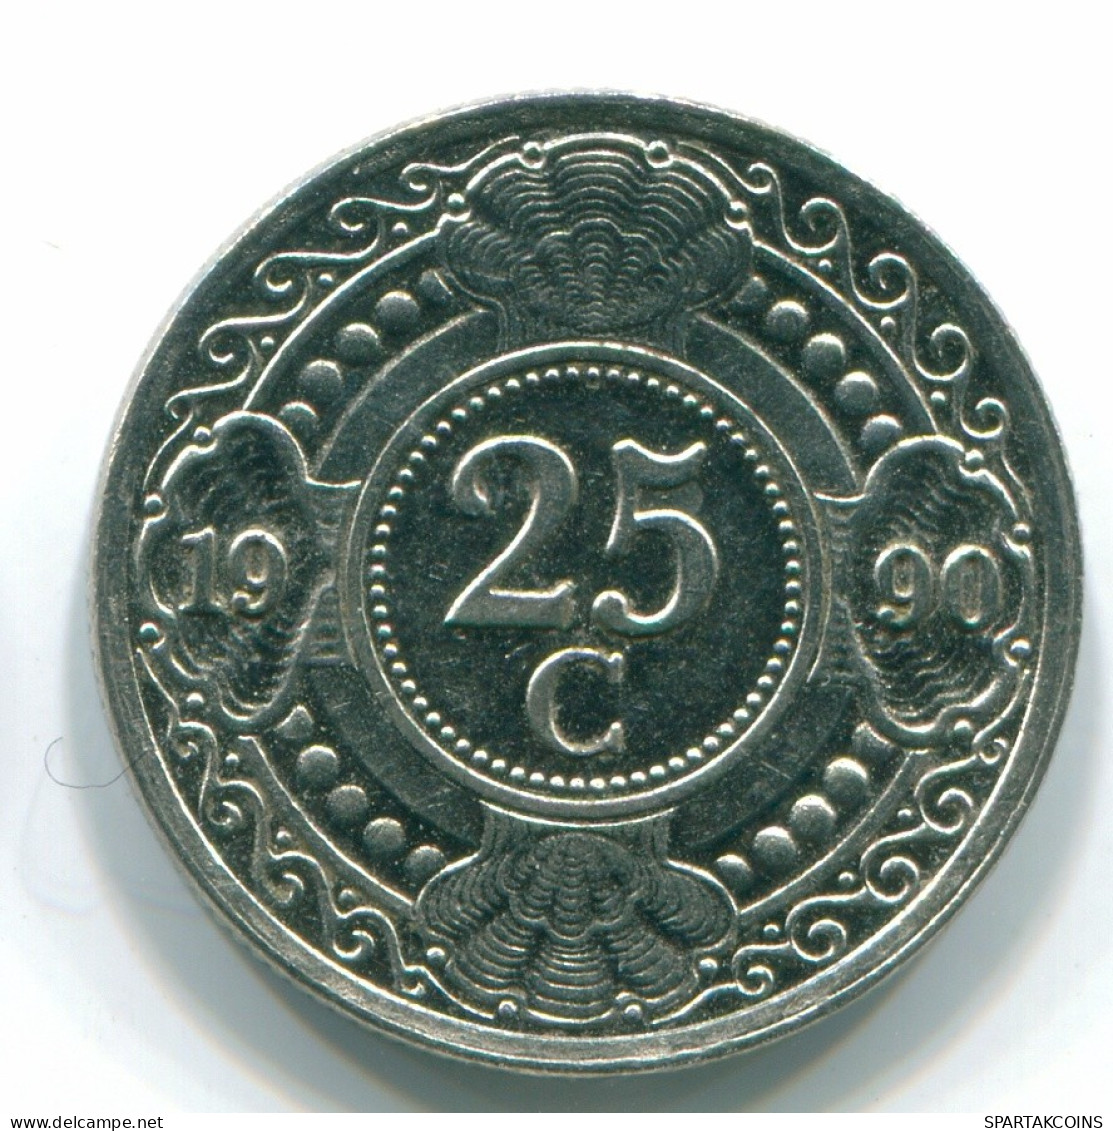 25 CENTS 1990 NETHERLANDS ANTILLES Nickel Colonial Coin #S11259.U.A - Niederländische Antillen